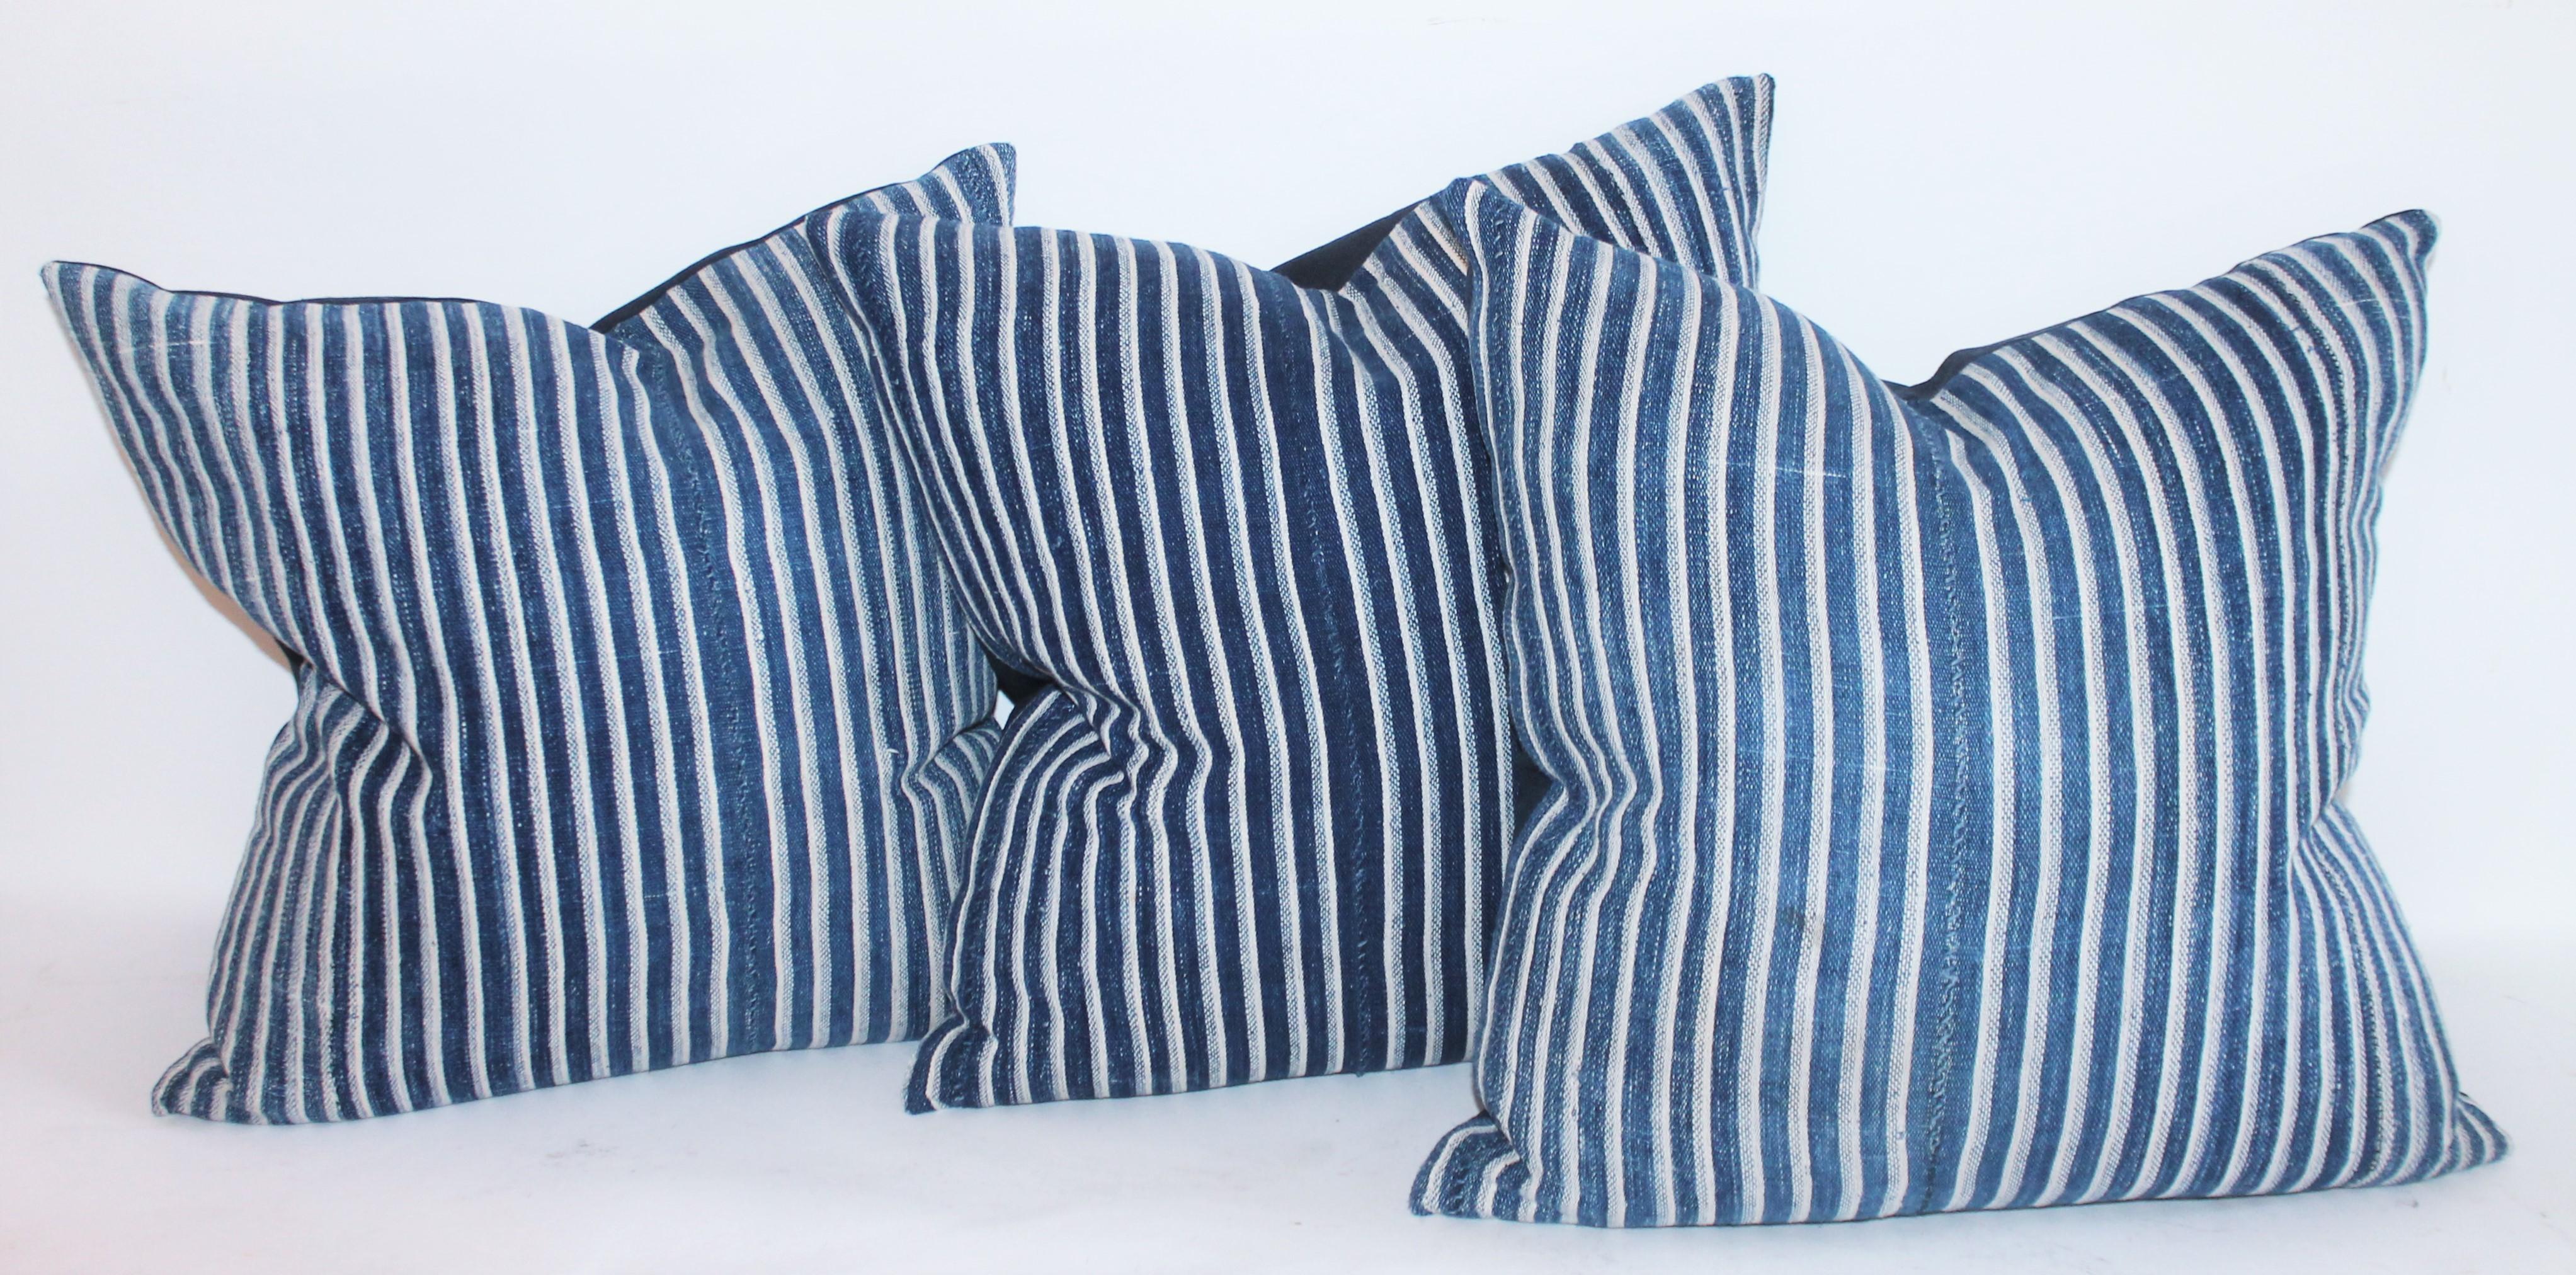 Cette collection du 19ème siècle s'est joliment effacée. Le support est en lin de coton bleu indigo. Vendu comme un groupe de quatre oreillers.